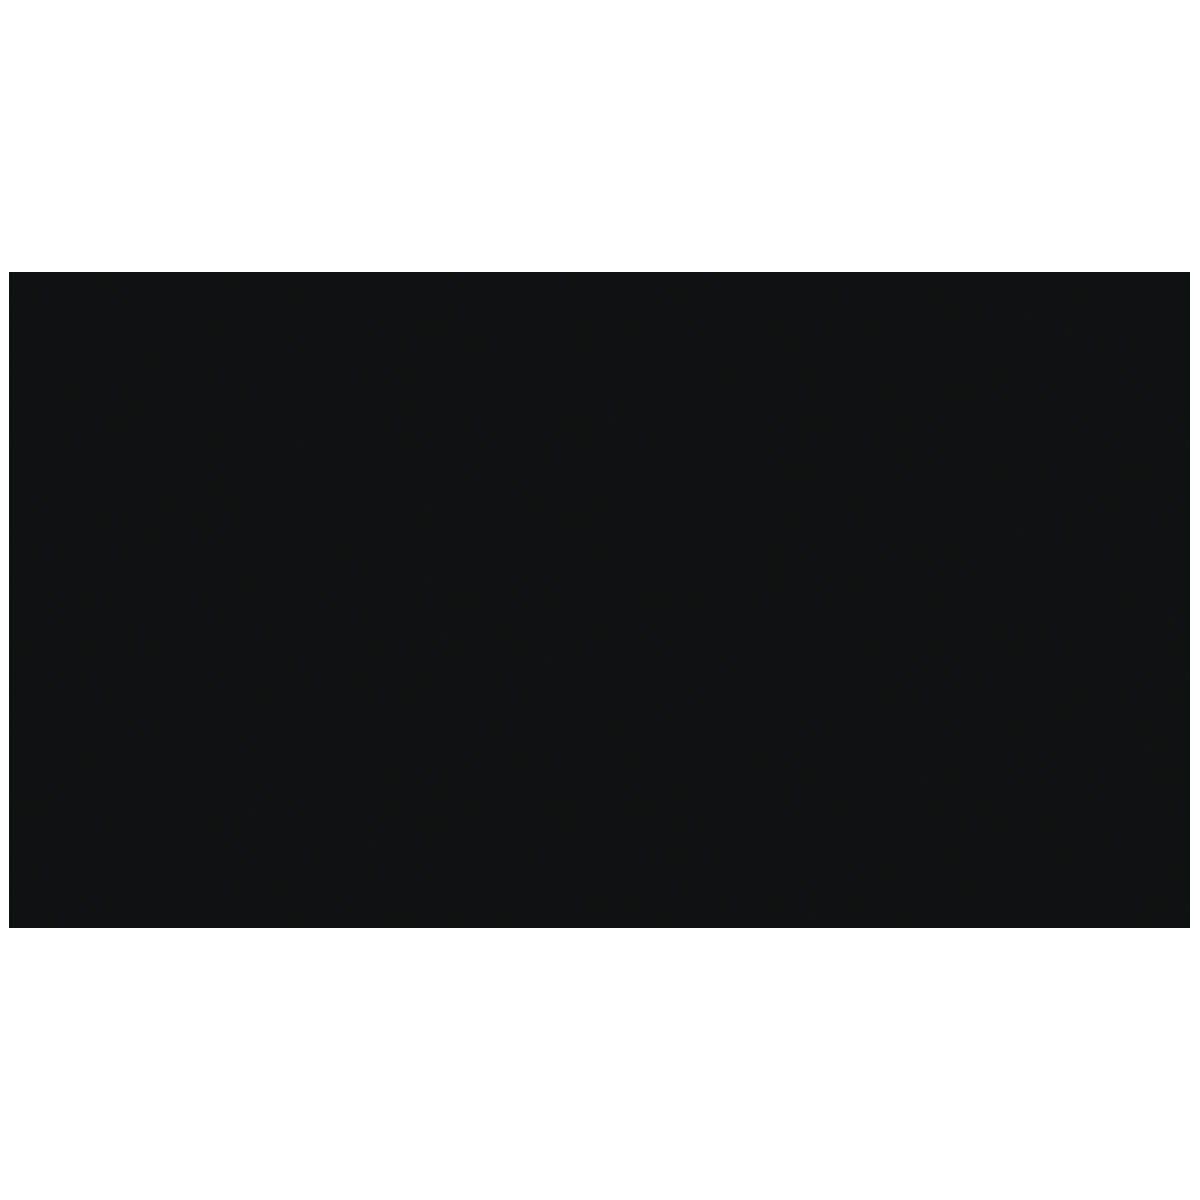 Selbstklebefolie Uni schwarz matt 90 x 210 cm